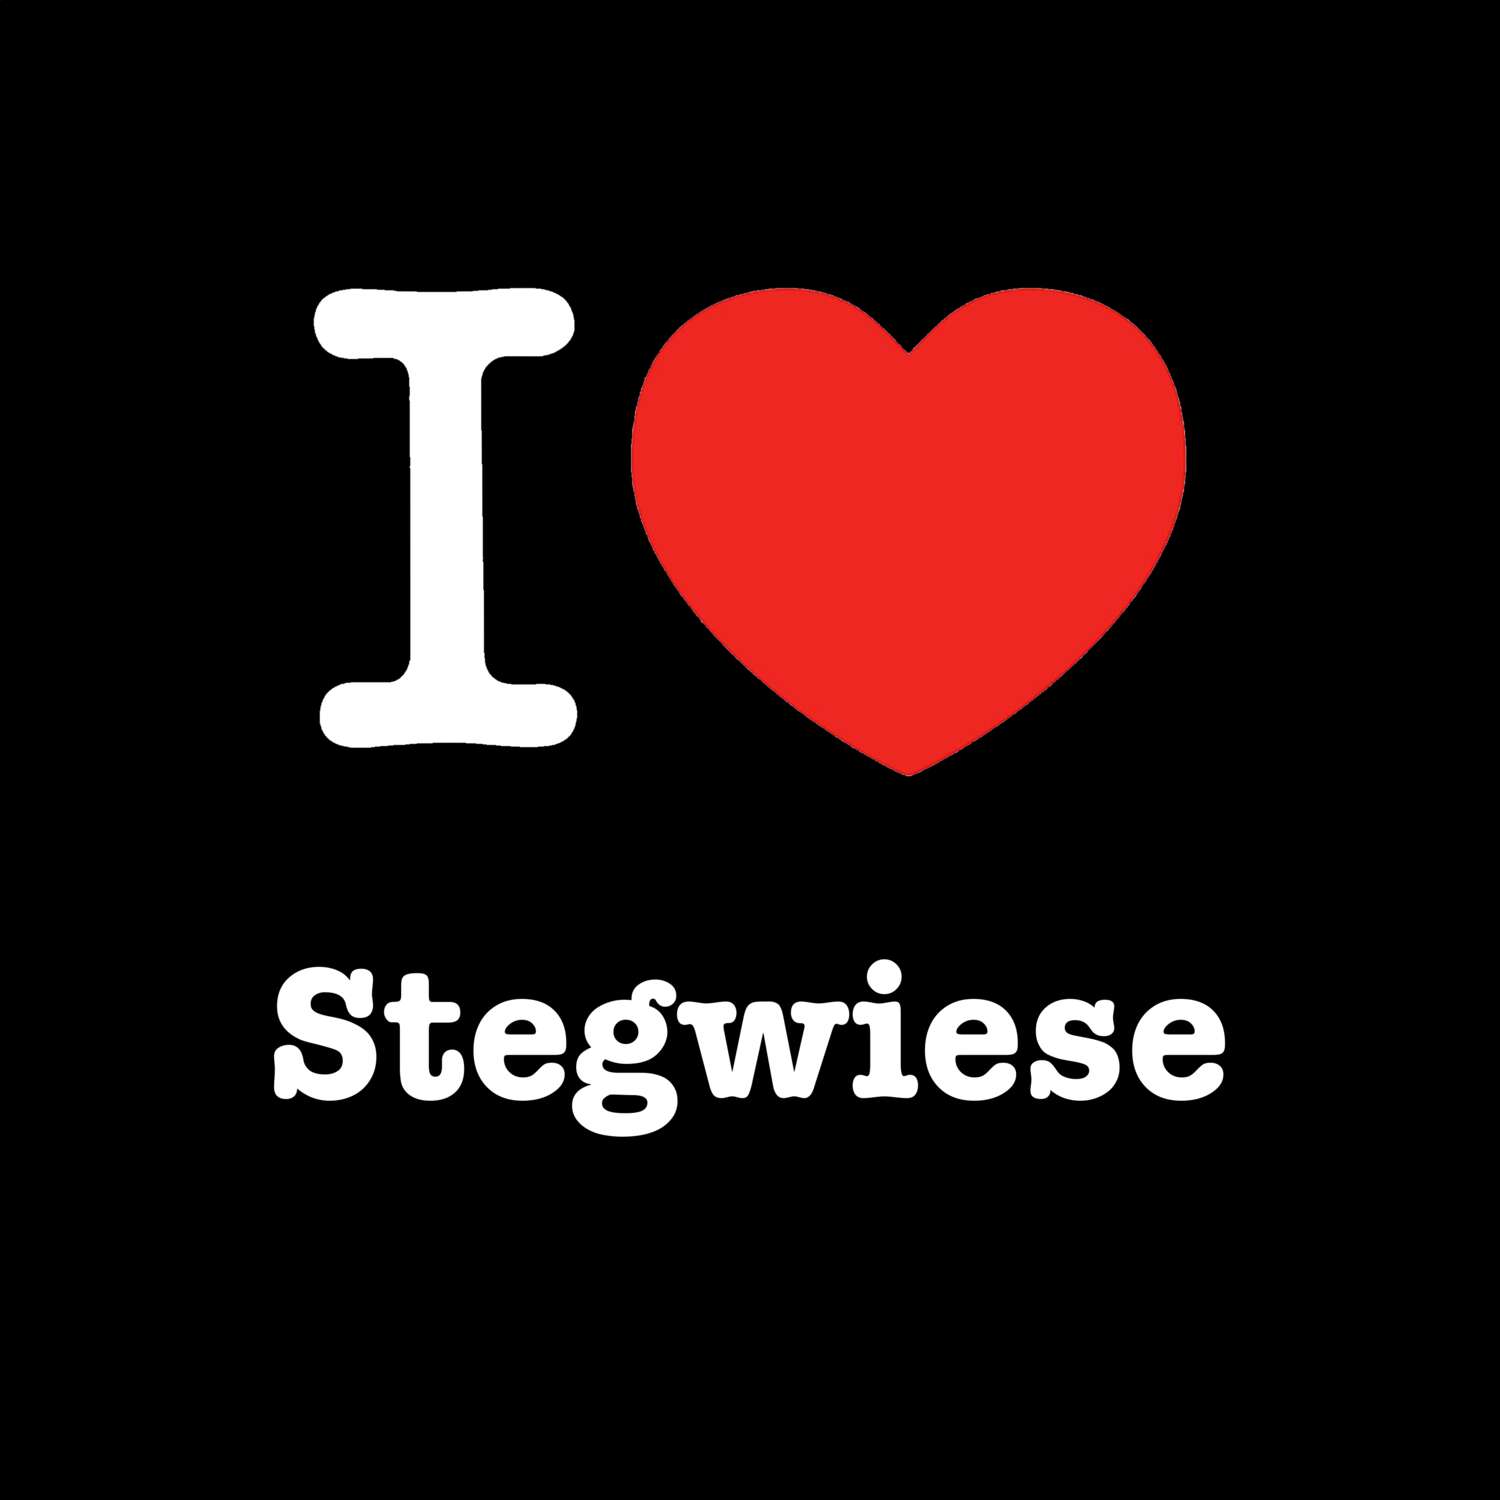 Stegwiese T-Shirt »I love«